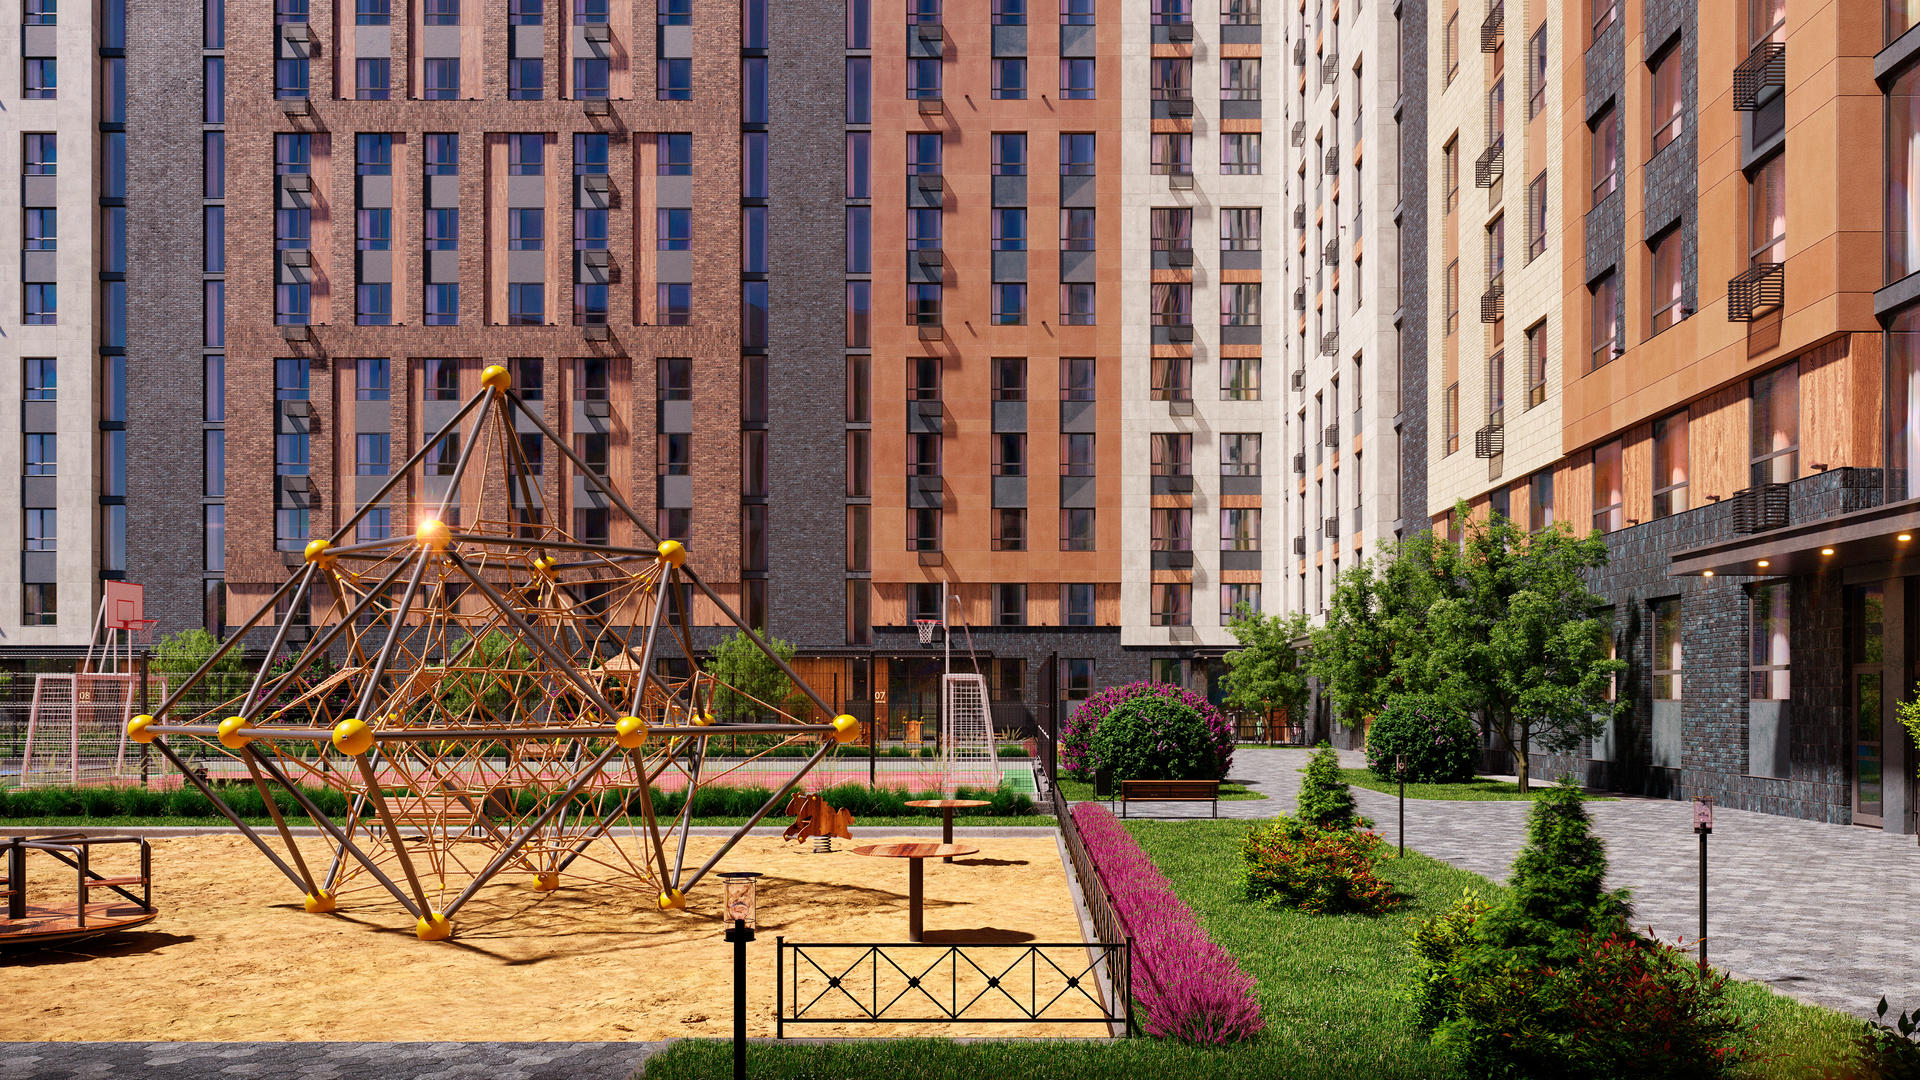 Продам квартиру в Москве по адресу жилой комплекс Эко Бунино, 141, площадь 3641 квм Недвижимость Москва (Россия)  Внутри района есть облагороженная ландшафтная зона для прогулок и пикников, а также оборудованная набережная